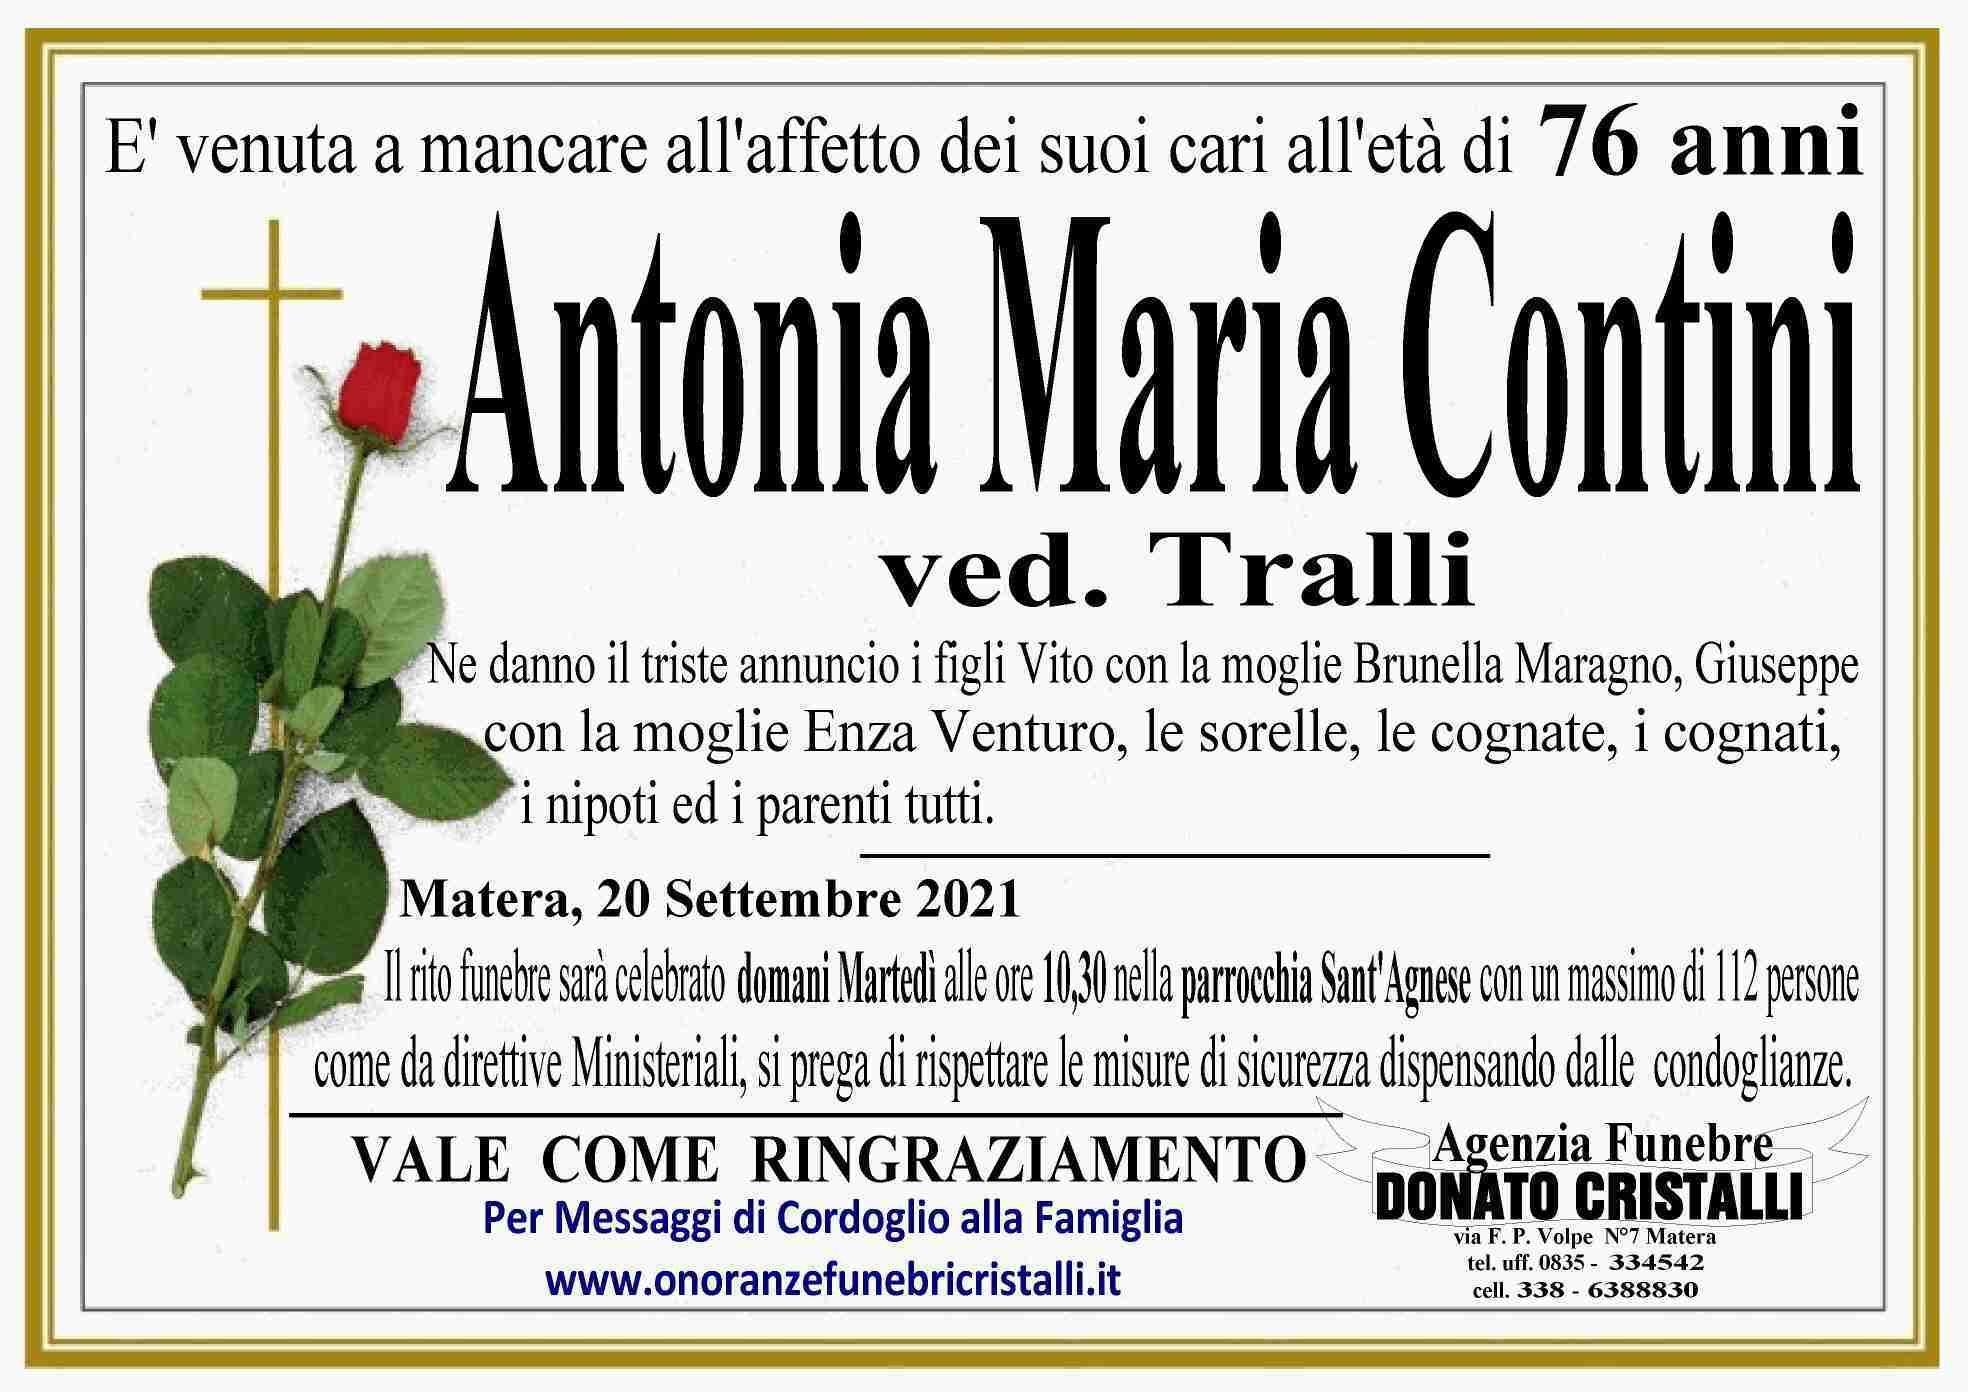 Antonia Maria Contini